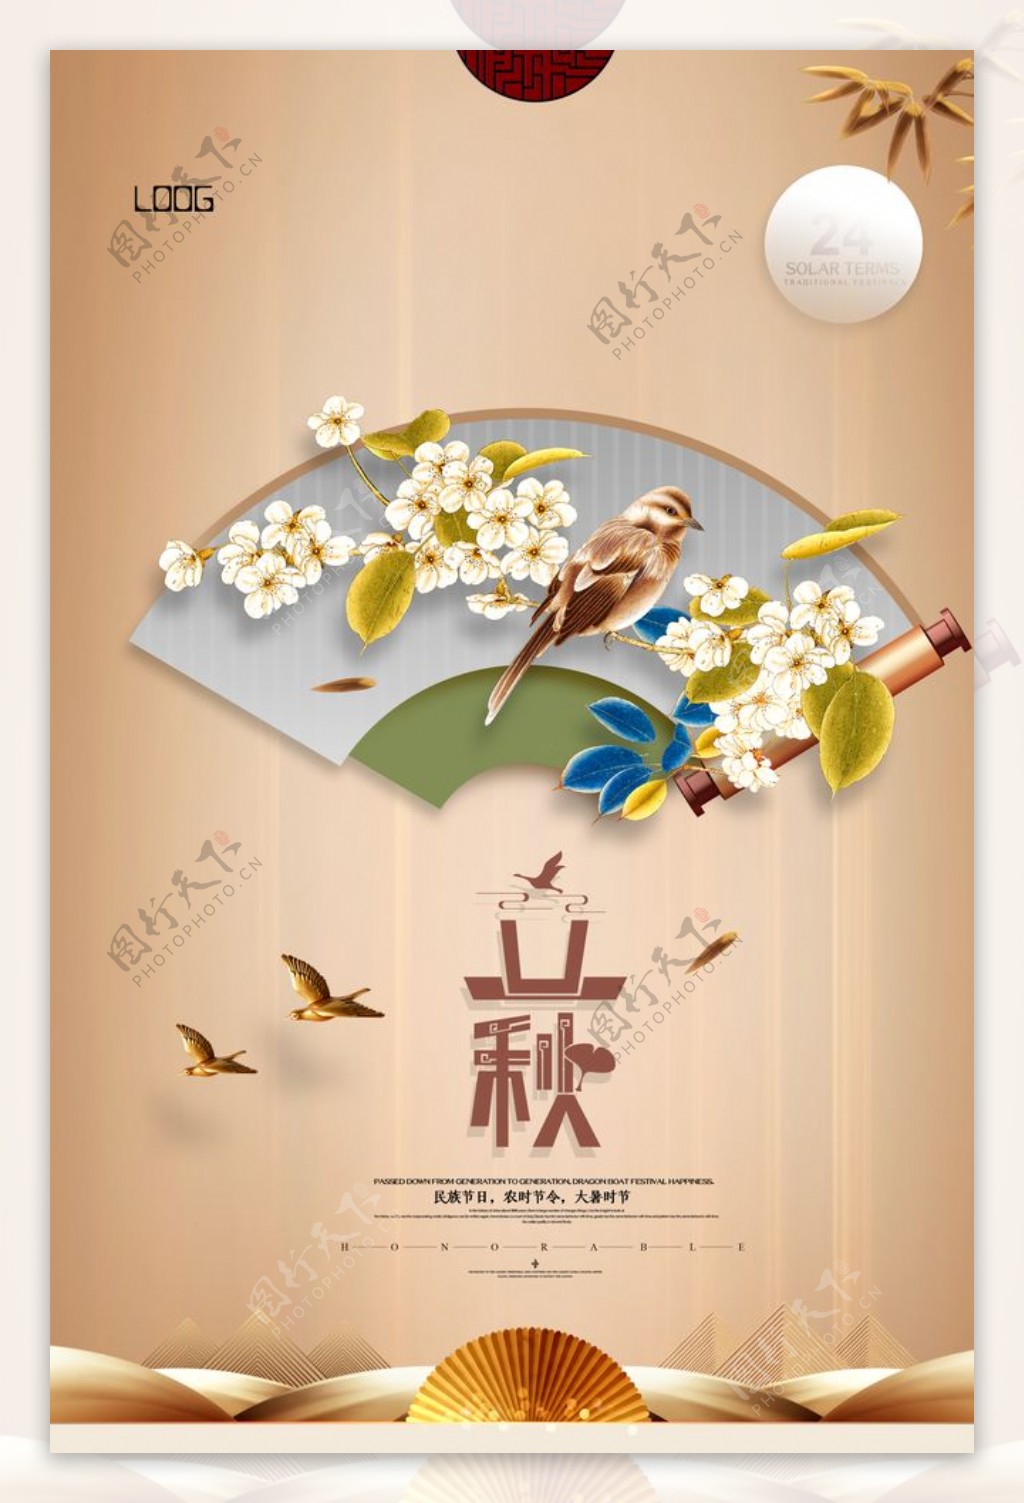 简约传统中国立秋海报